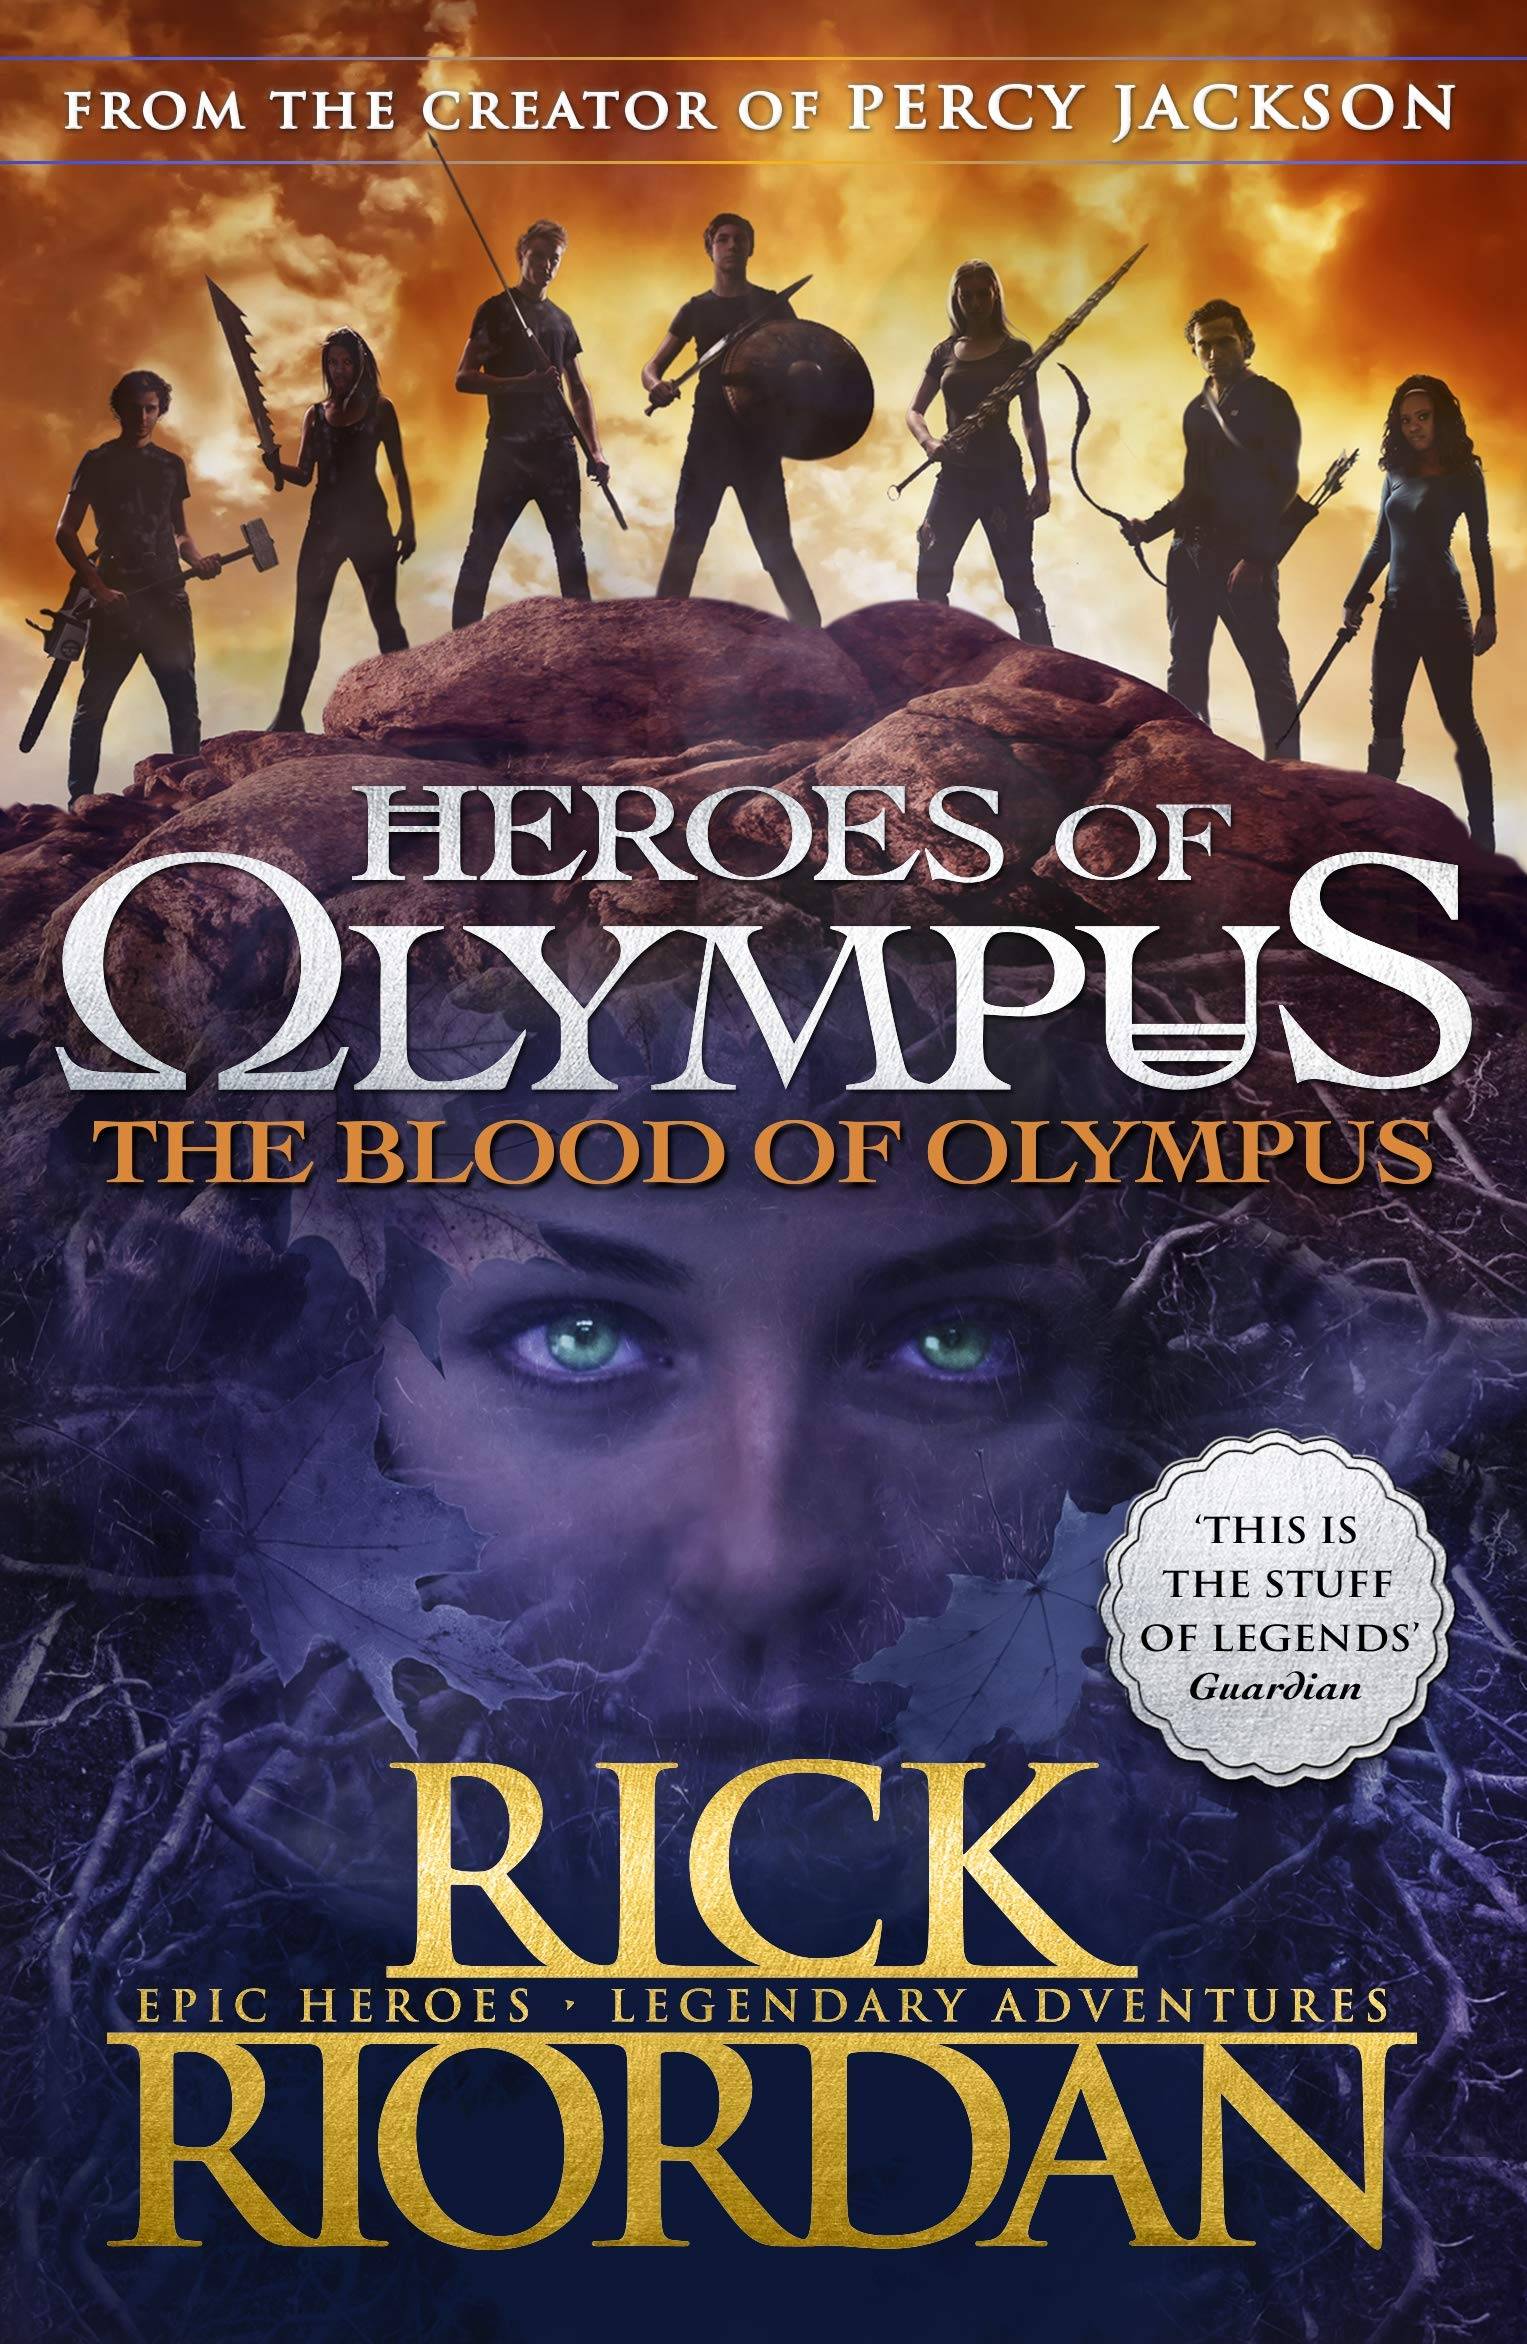 IMG : Heroes of Olympus the Blood of Olympus #5